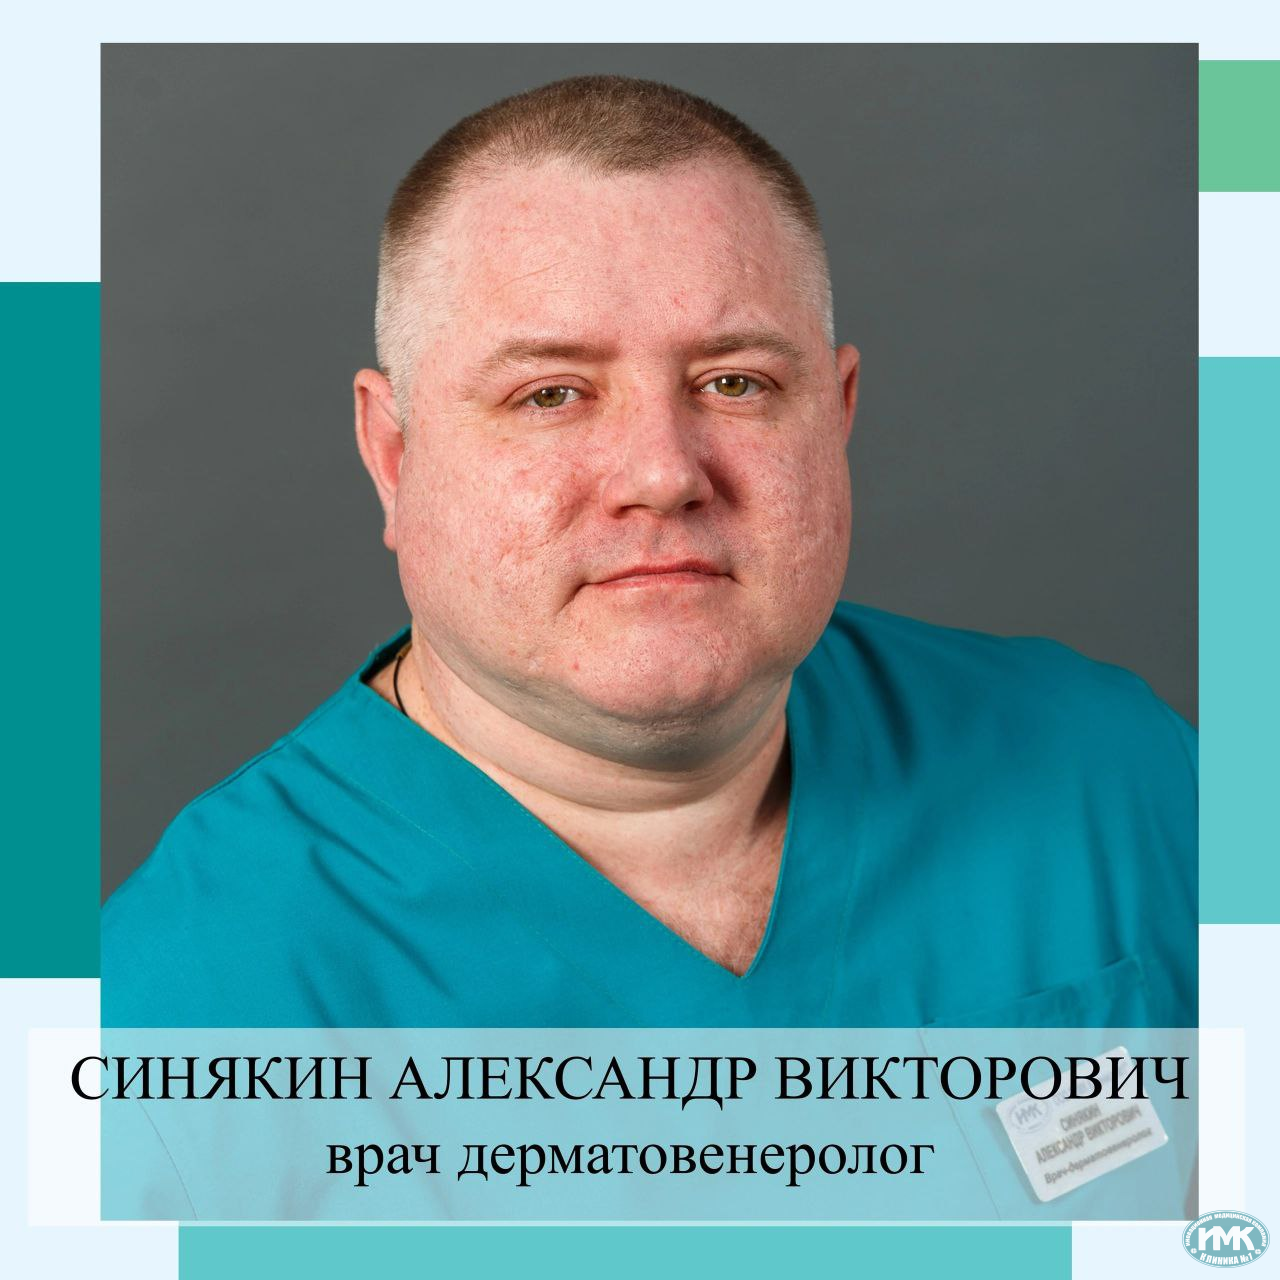 Александр Викторович Синякин